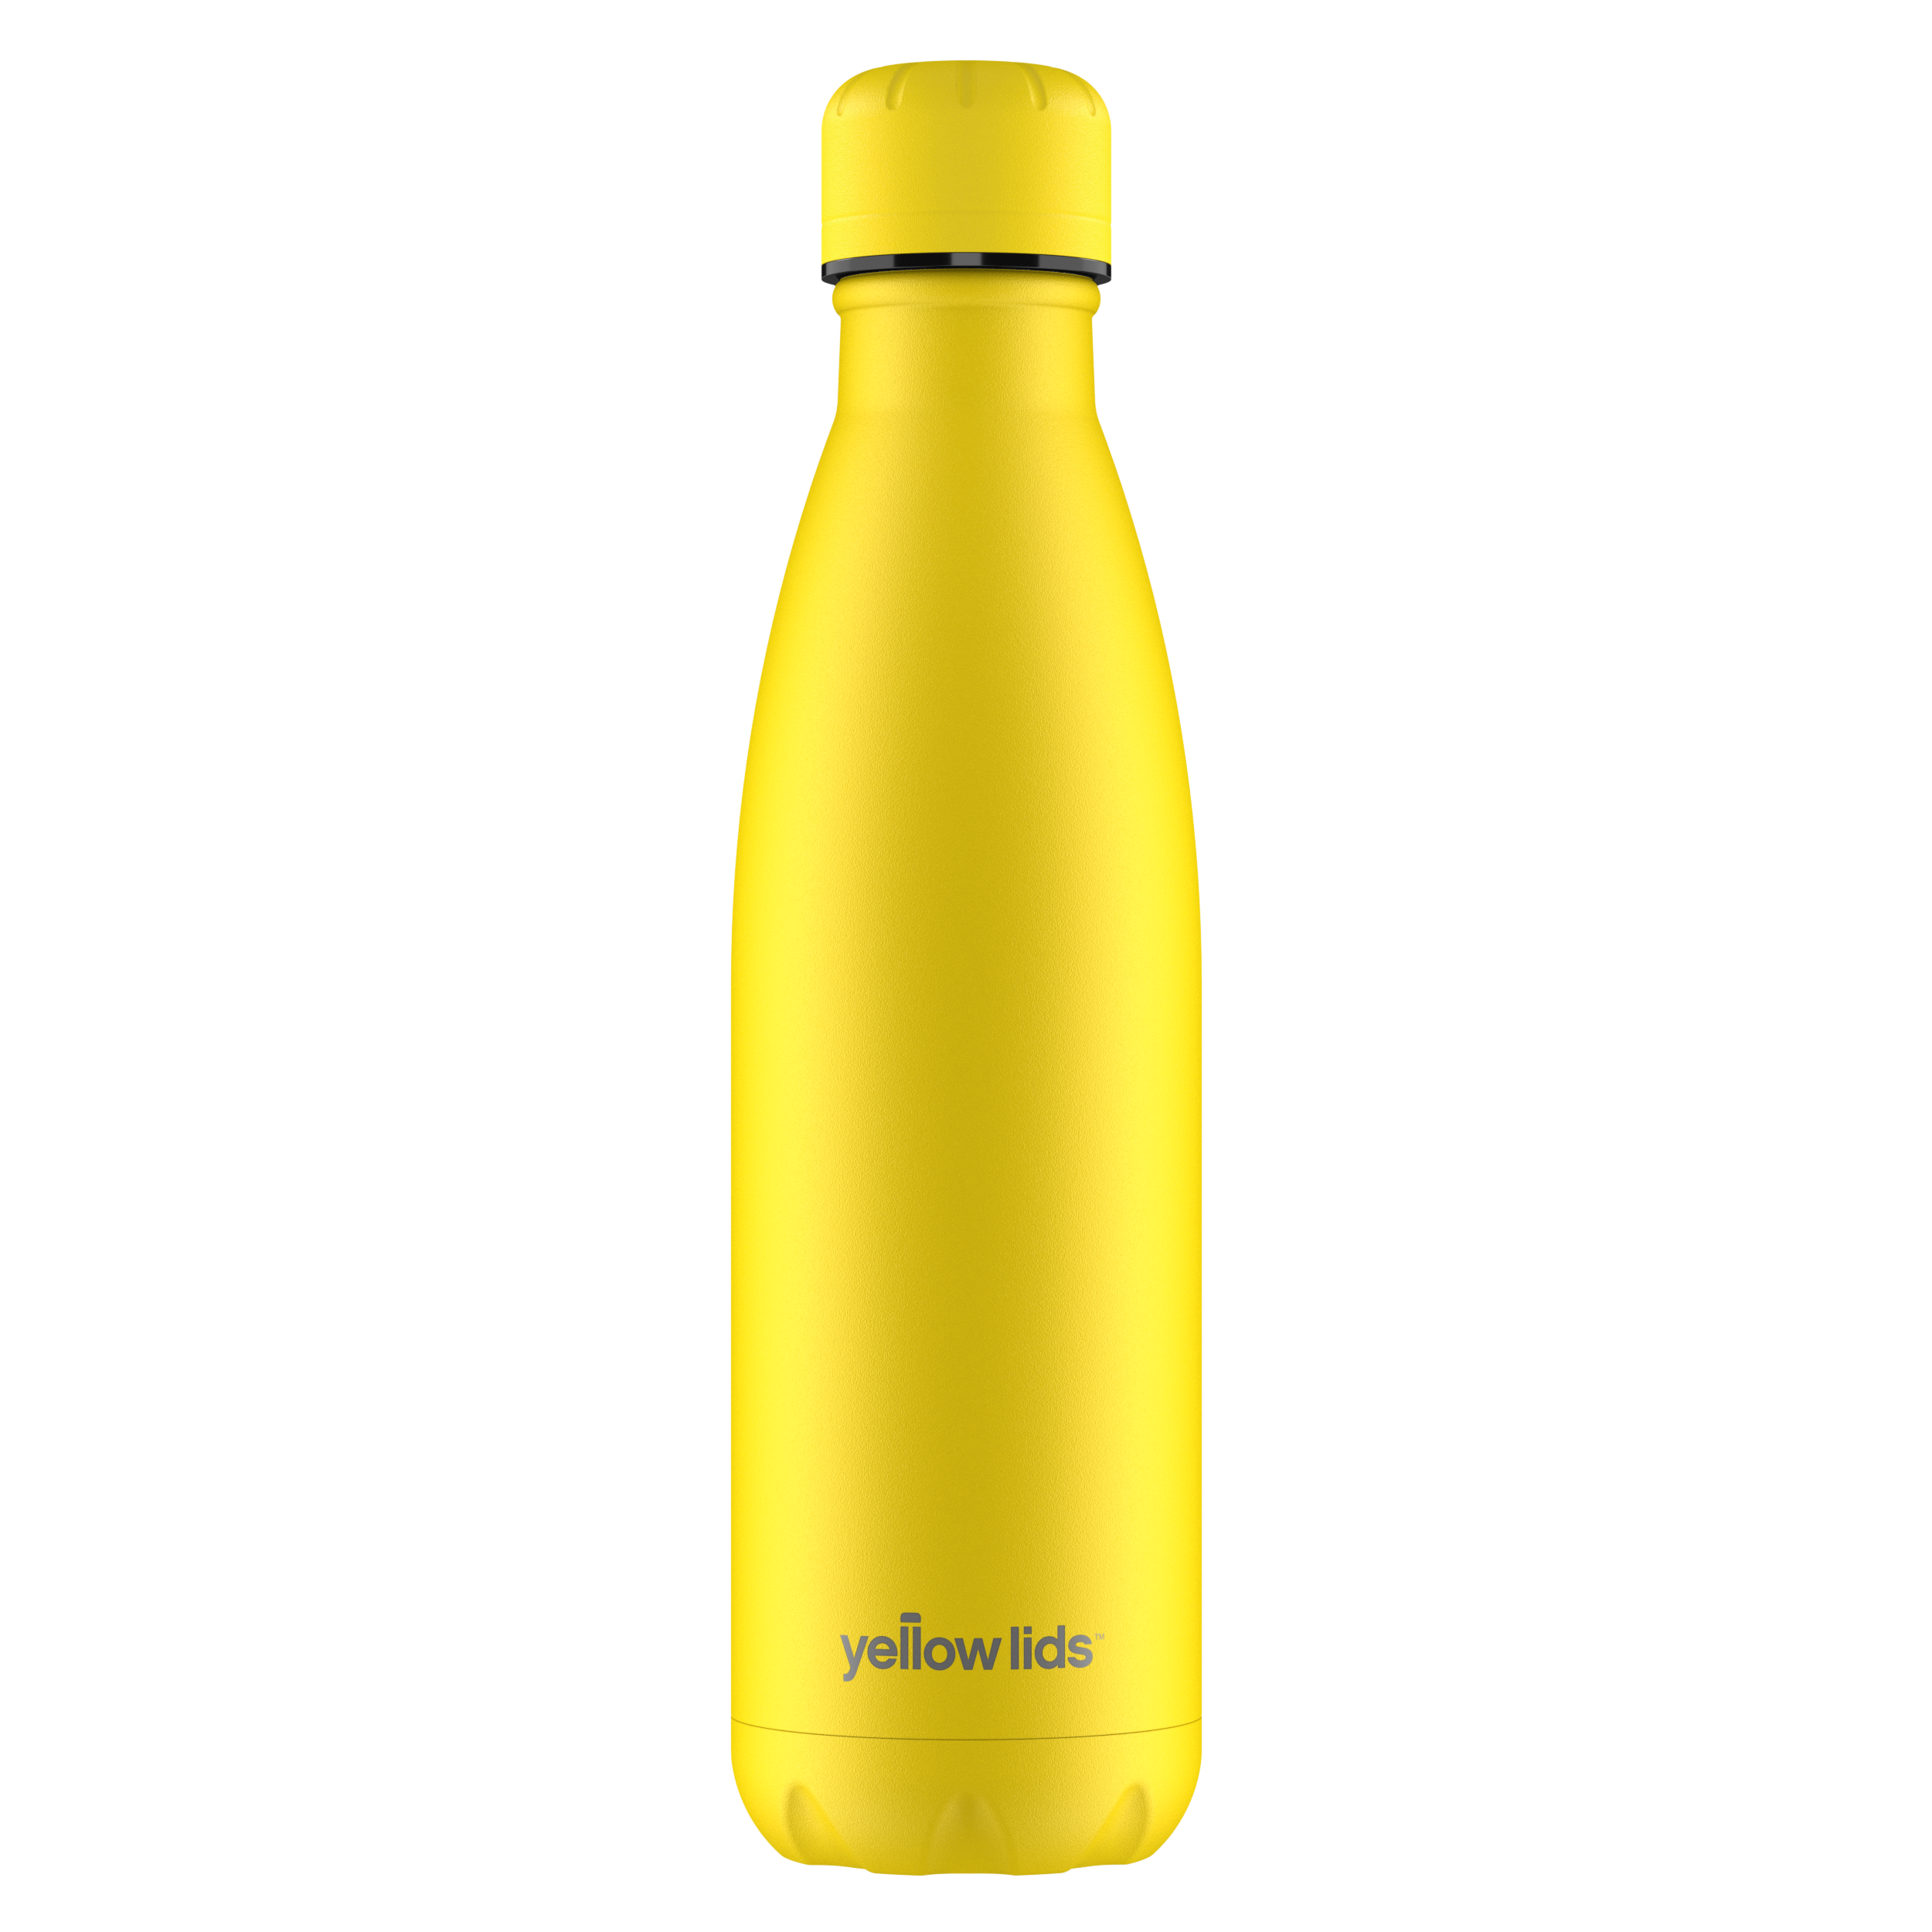 Tang Yellow Water Bottle